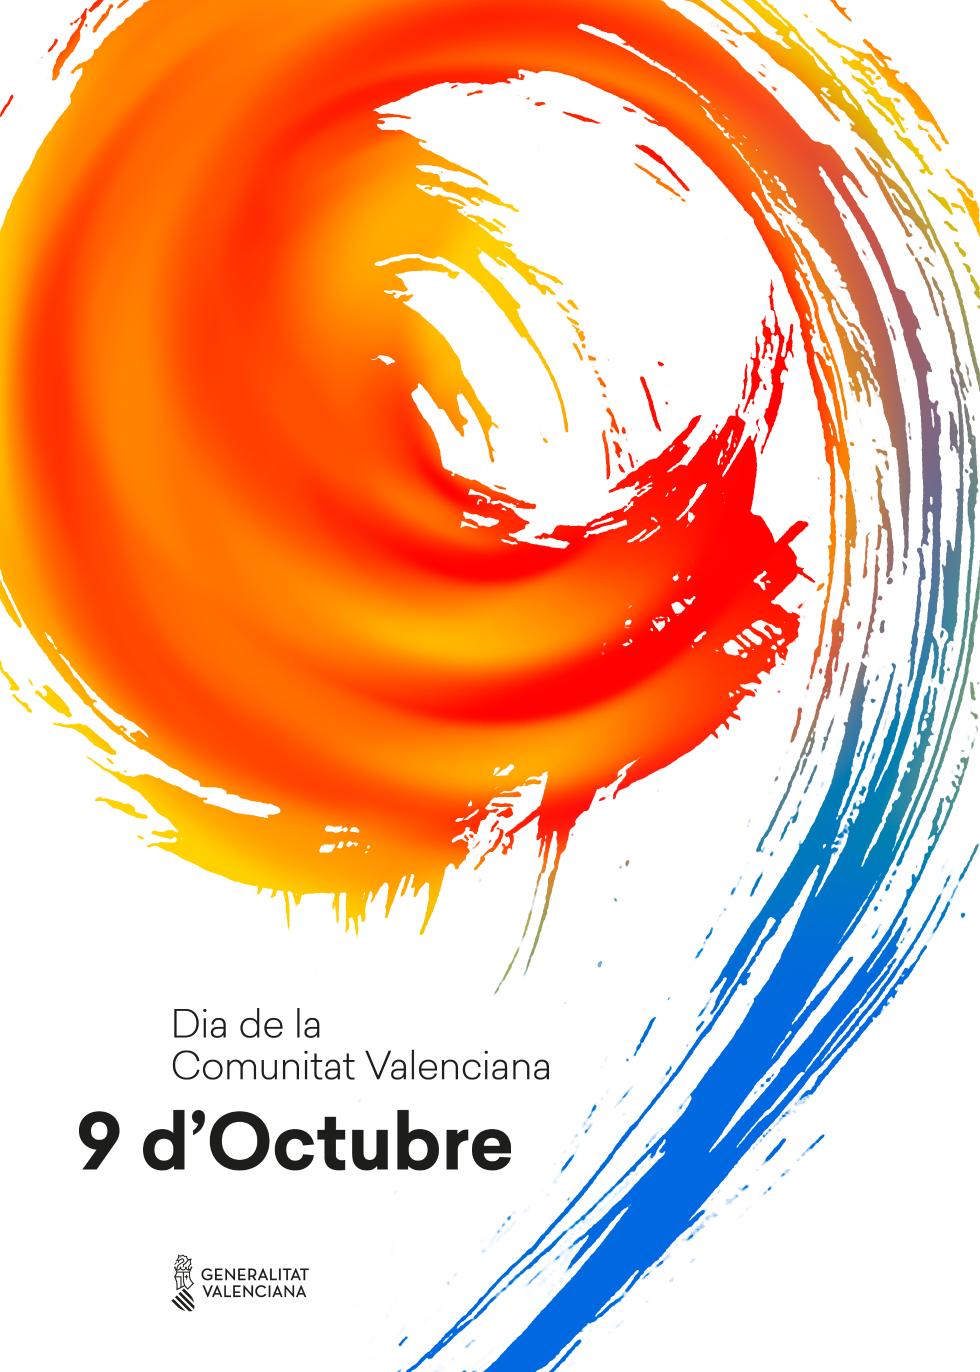 La Generalitat celebra el 9 d’Octubre amb concerts, activitats infantils i jornades de portes obertes a València, Alacant, Castelló de la Plana i Elx